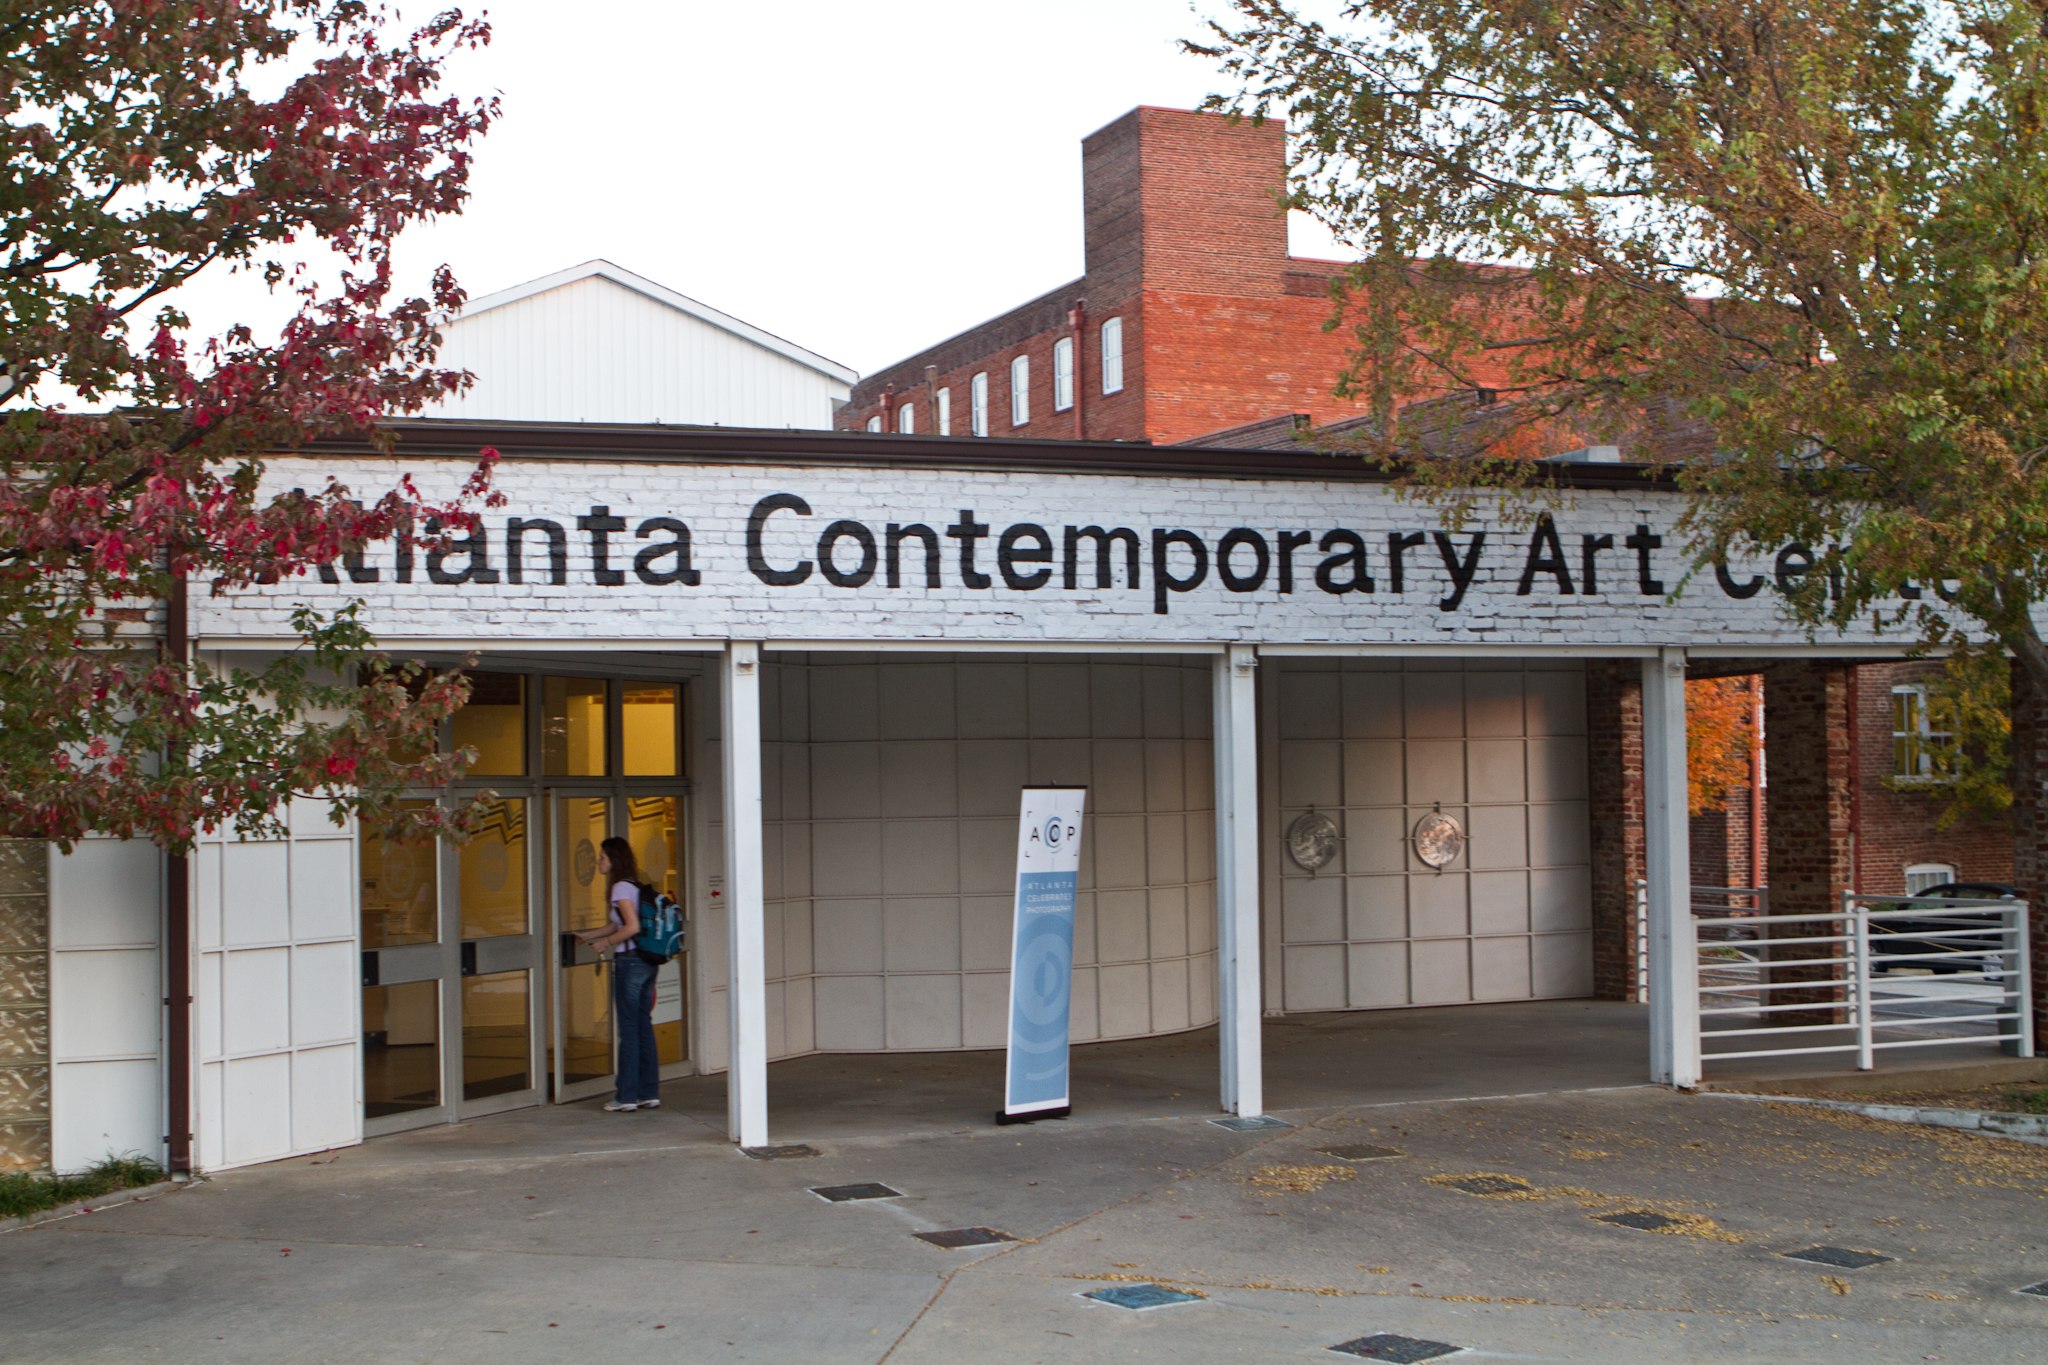 Atlanta Contemporary